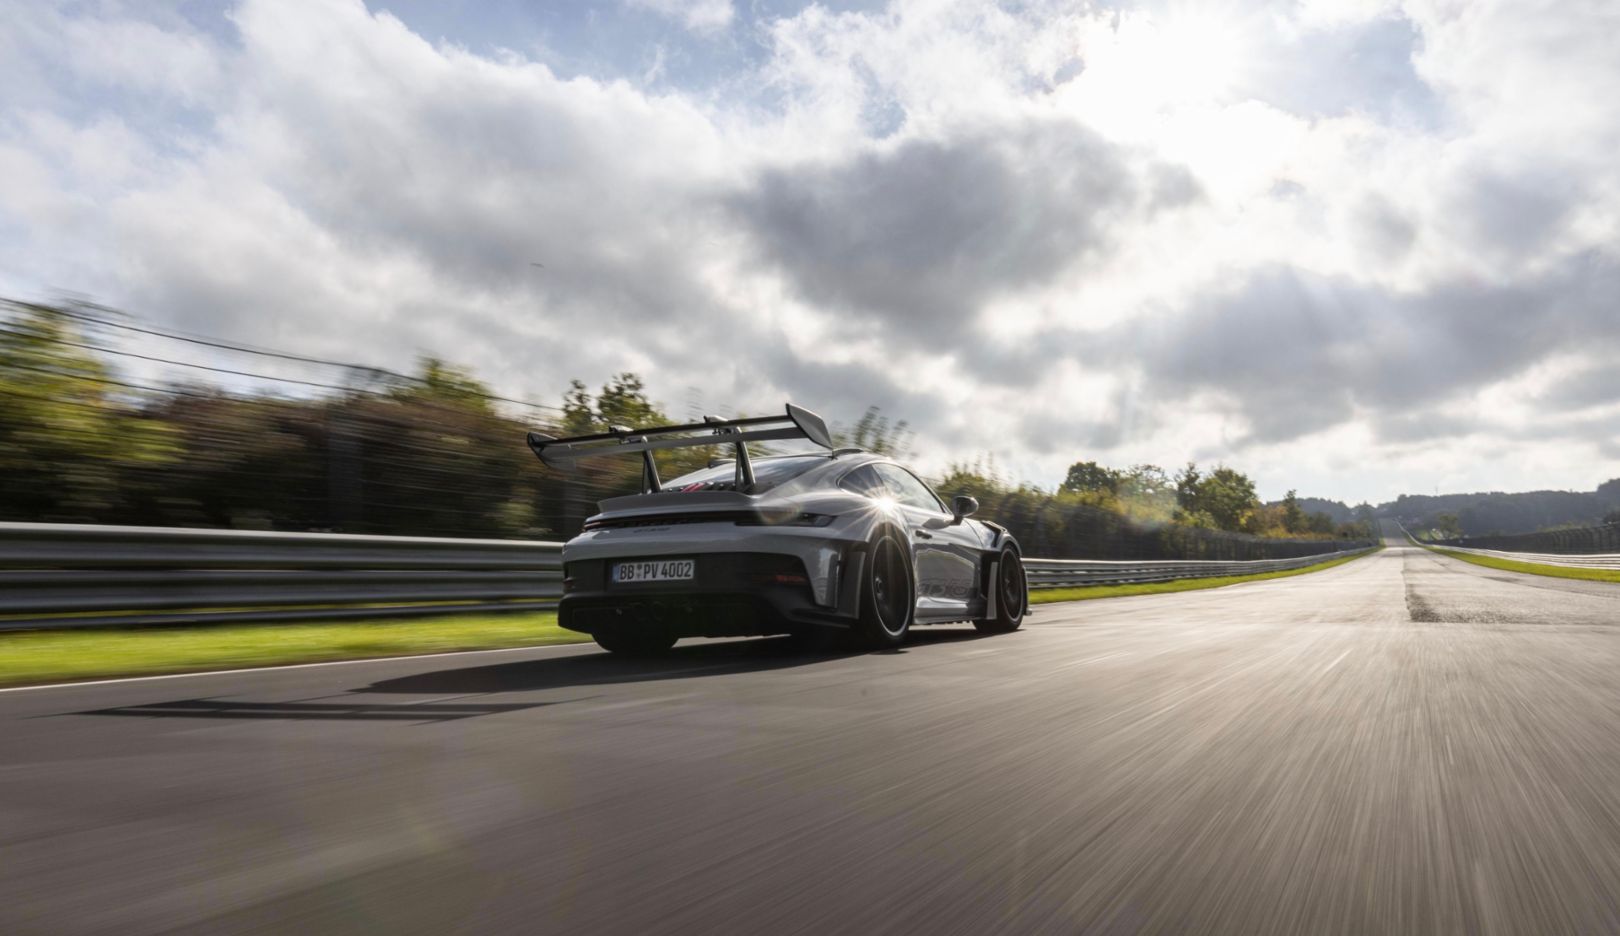 Porsche on track